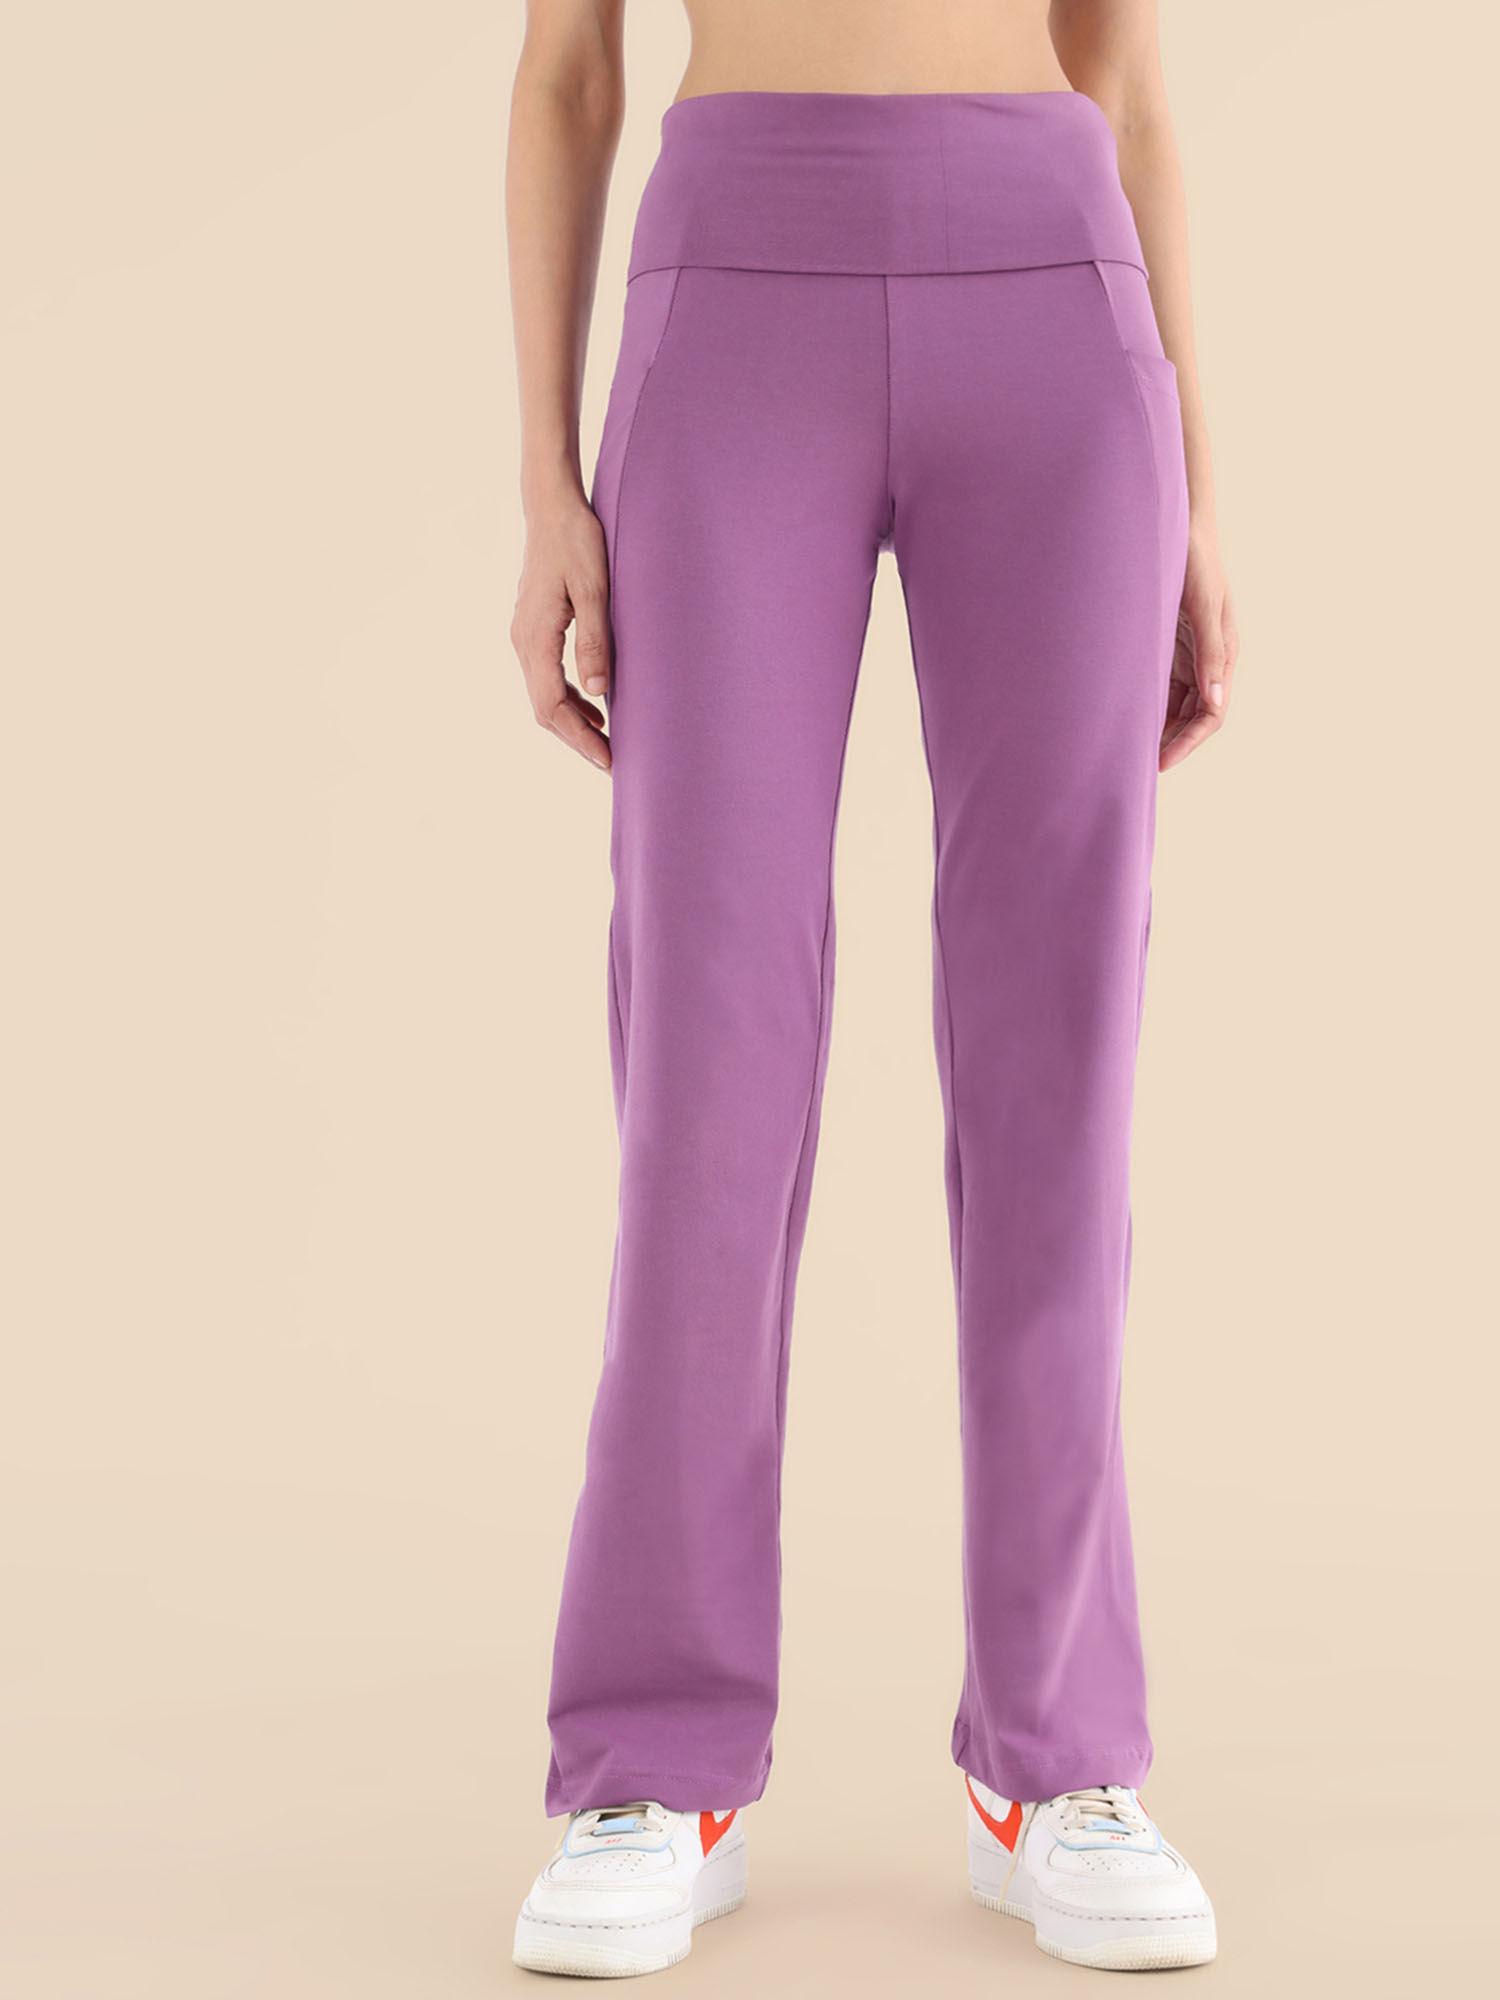 yoga pants - soft lilac